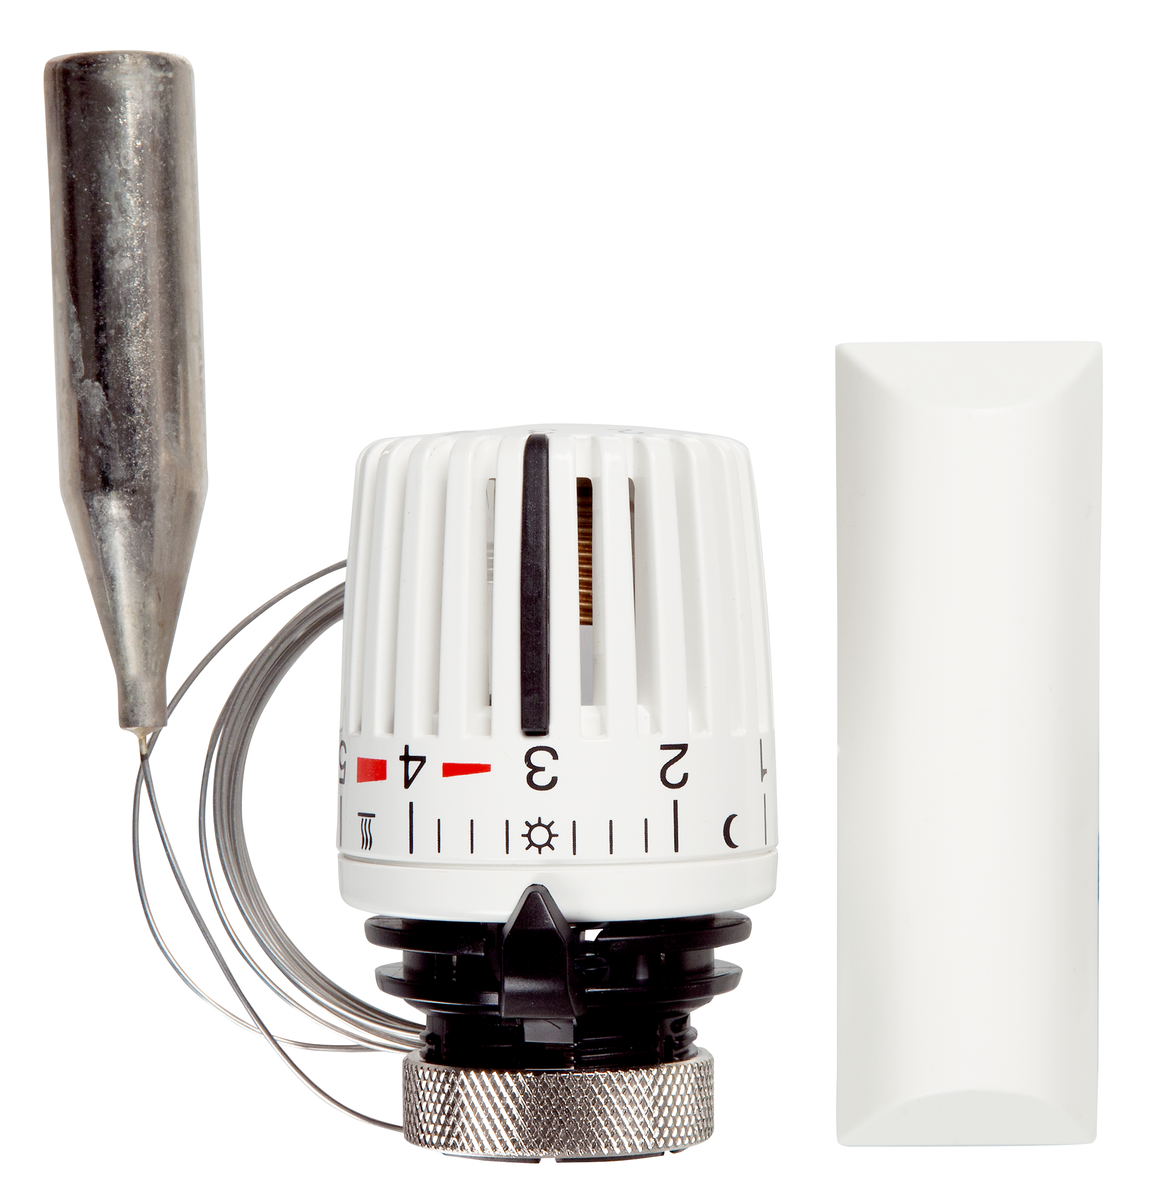 AFRISO Thermostat-Regelkopf 323 FN mit 0-Stellung weiß/schwarz 1,2m Gampper VOR 92960 92970